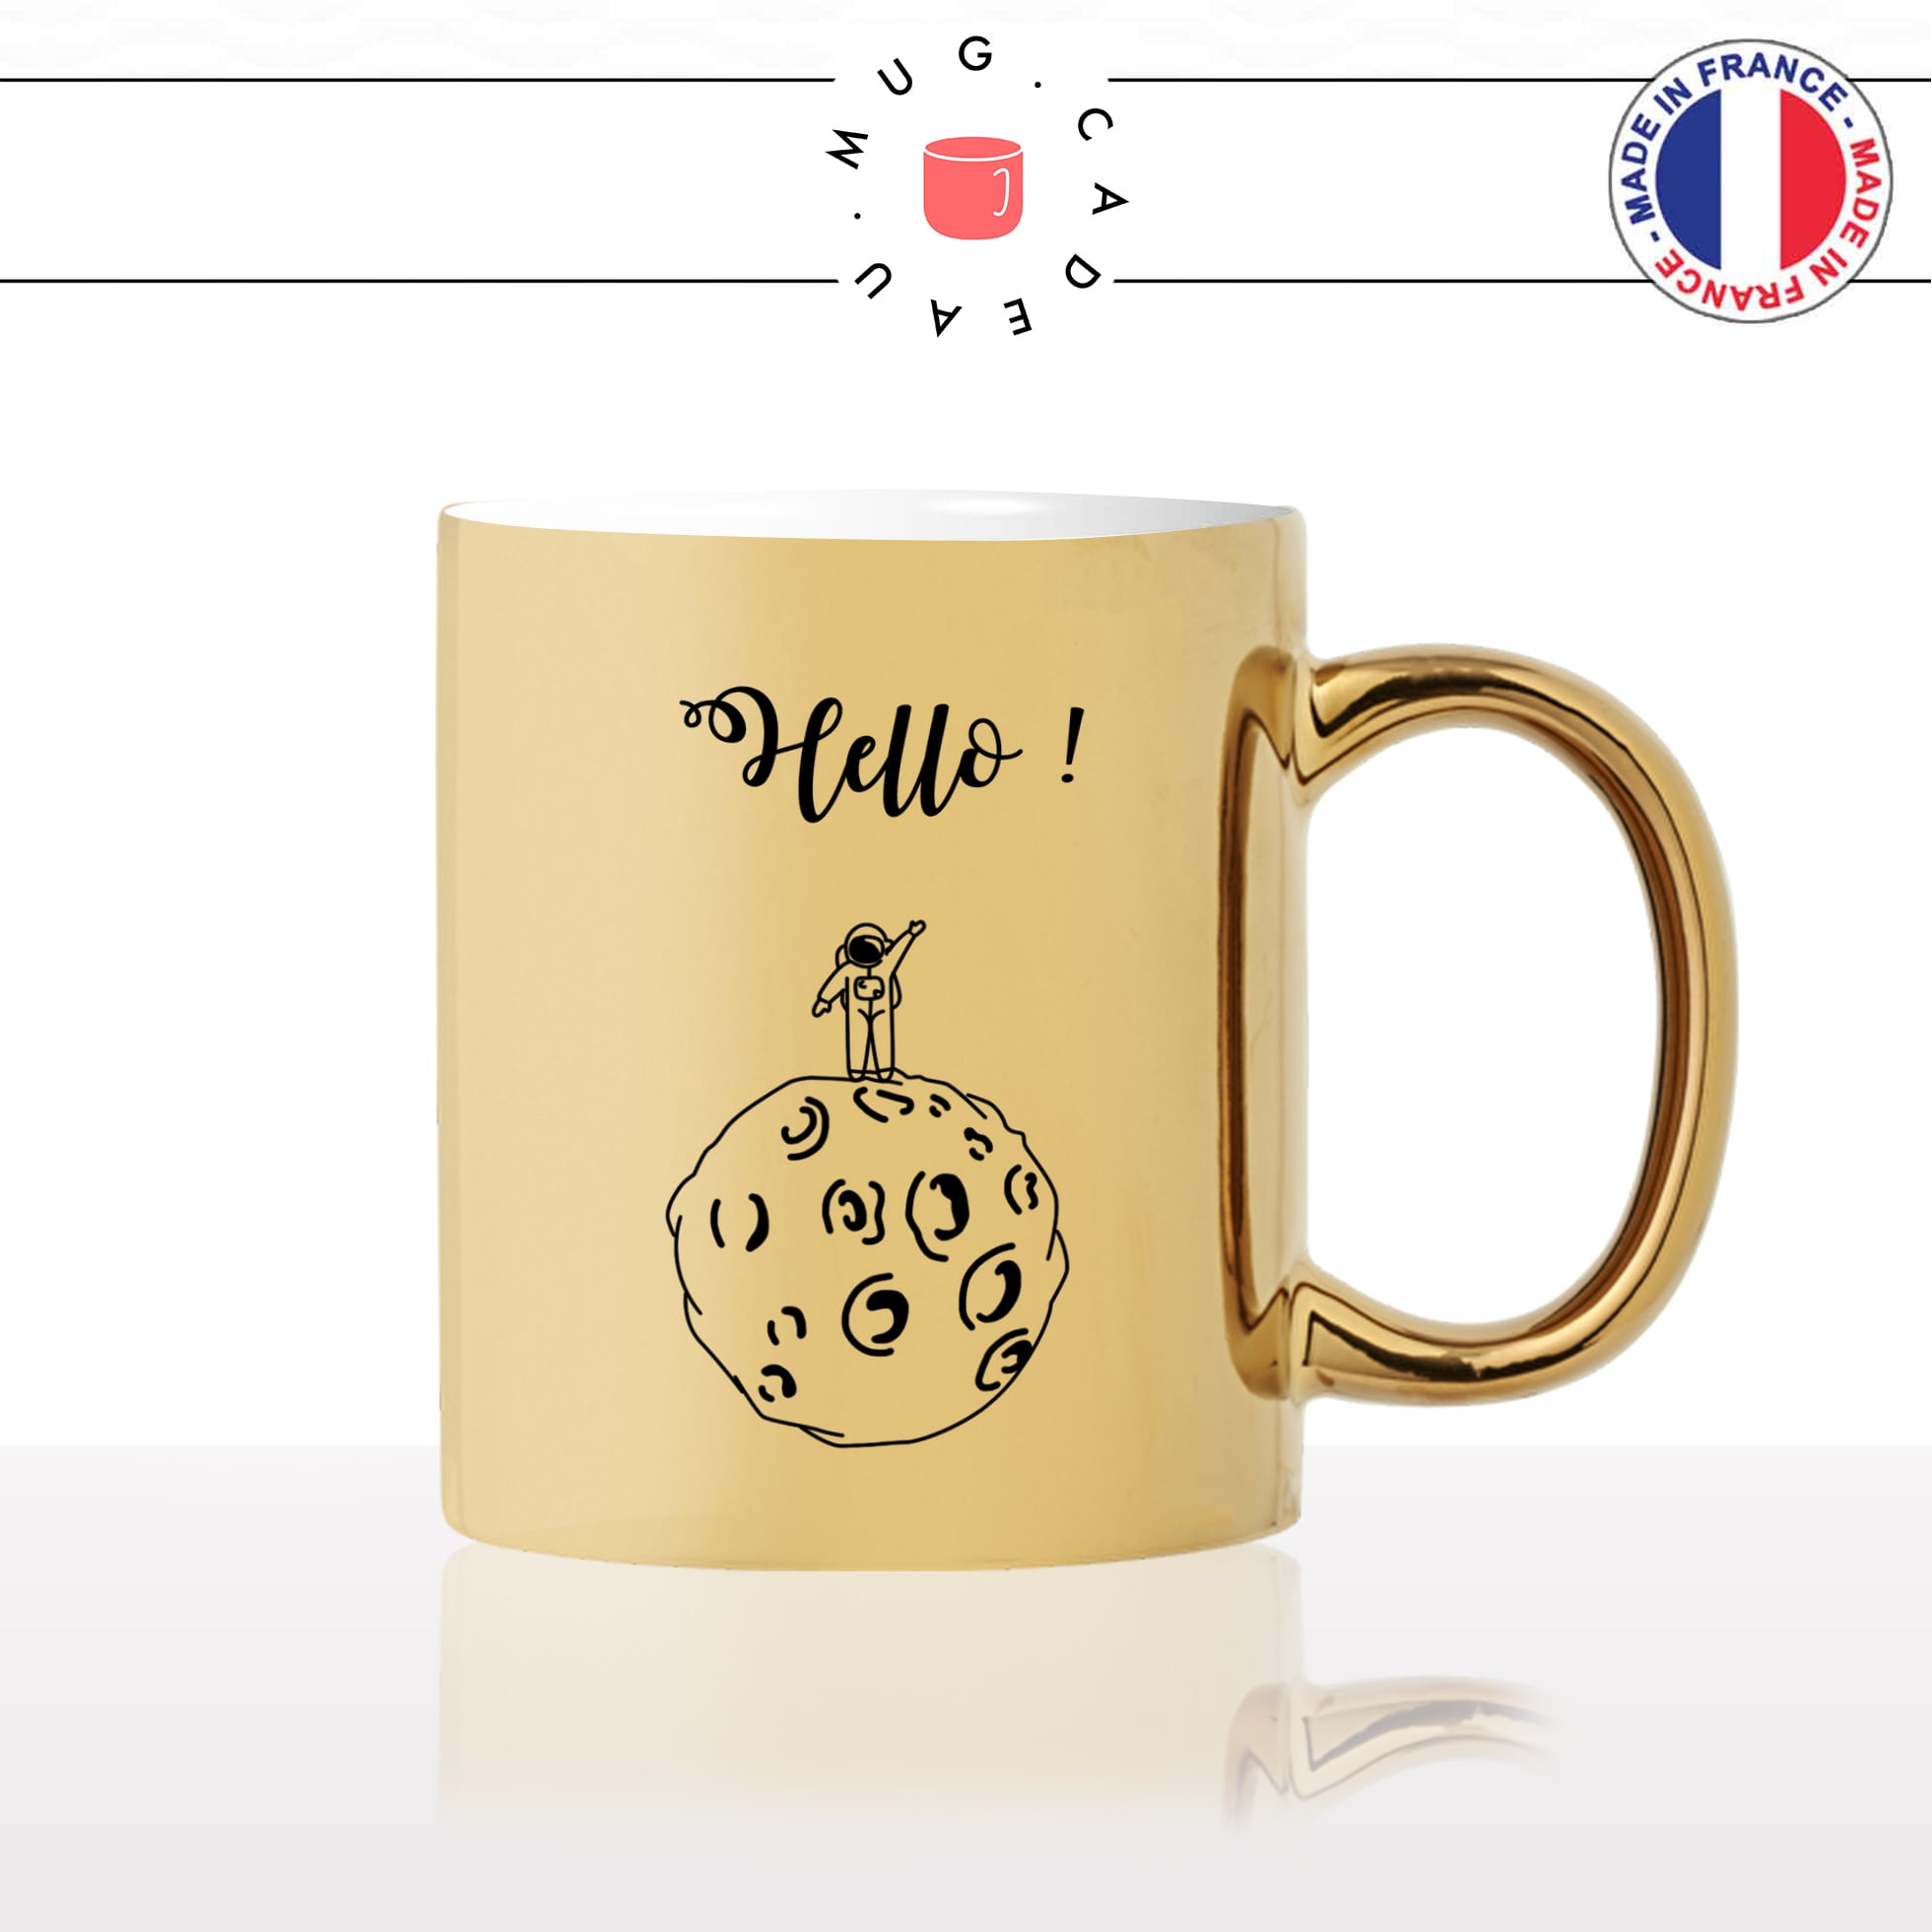 mug-tasse-or-doré-gold-espace-astronaute-hello-bonjour-lune-fusée-armstrong-nasa-cool-idée-cadeau-drole-original-fun-café-thé-personnalisé2-min